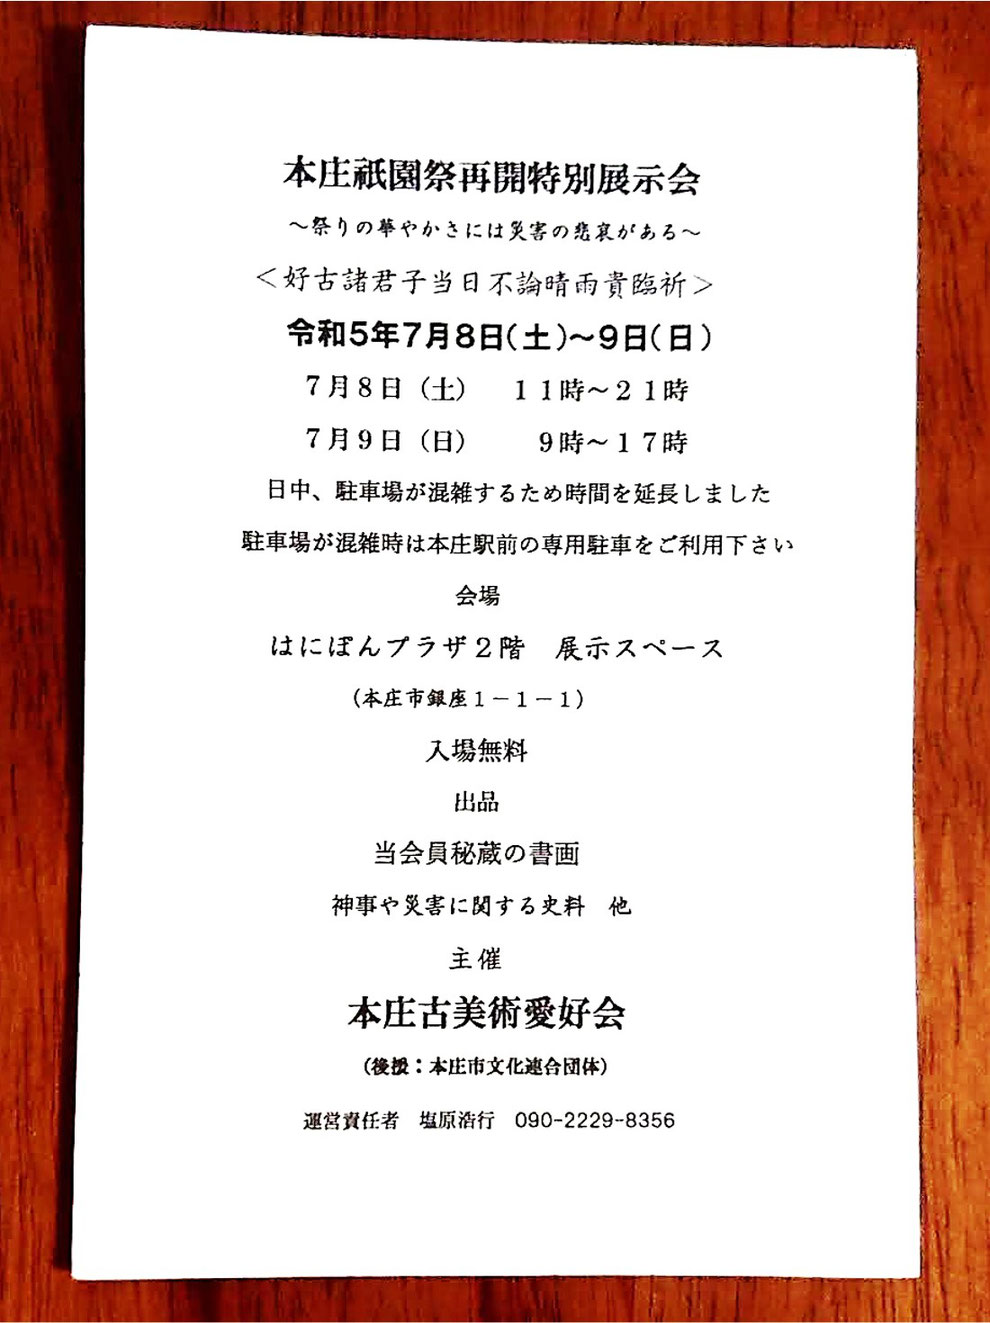 「本庄祇園祭再開特別展示会」のお知らせのハガキ